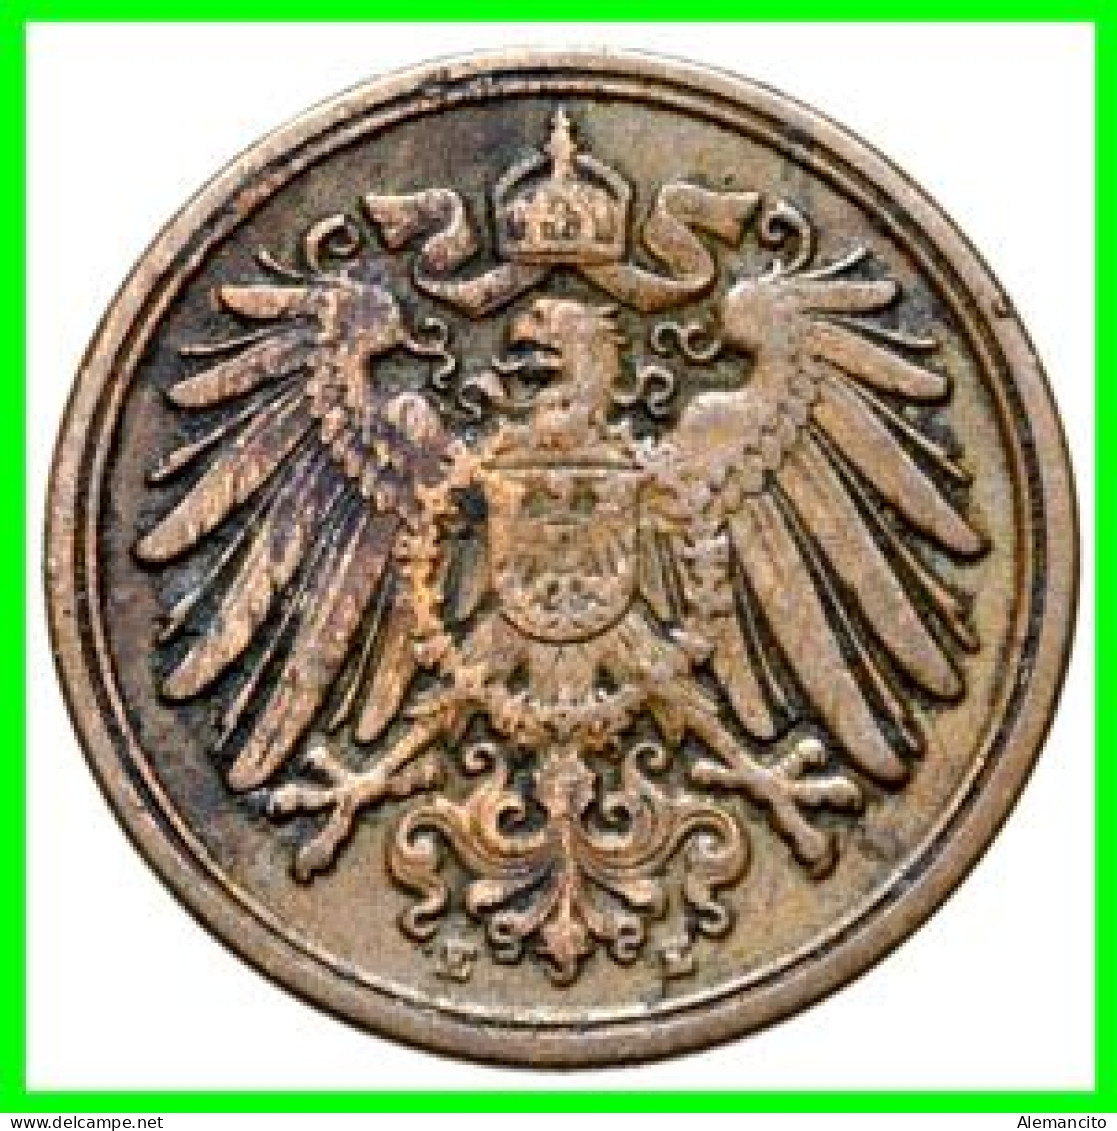 ALEMANIA – GERMANY - IMPERIO 4 MONEDAS DE SERIE COBRE DIAMETRO 17.5 Mm. DEL AÑO 1904 – KM-10   WILHELM II - 1 Pfennig